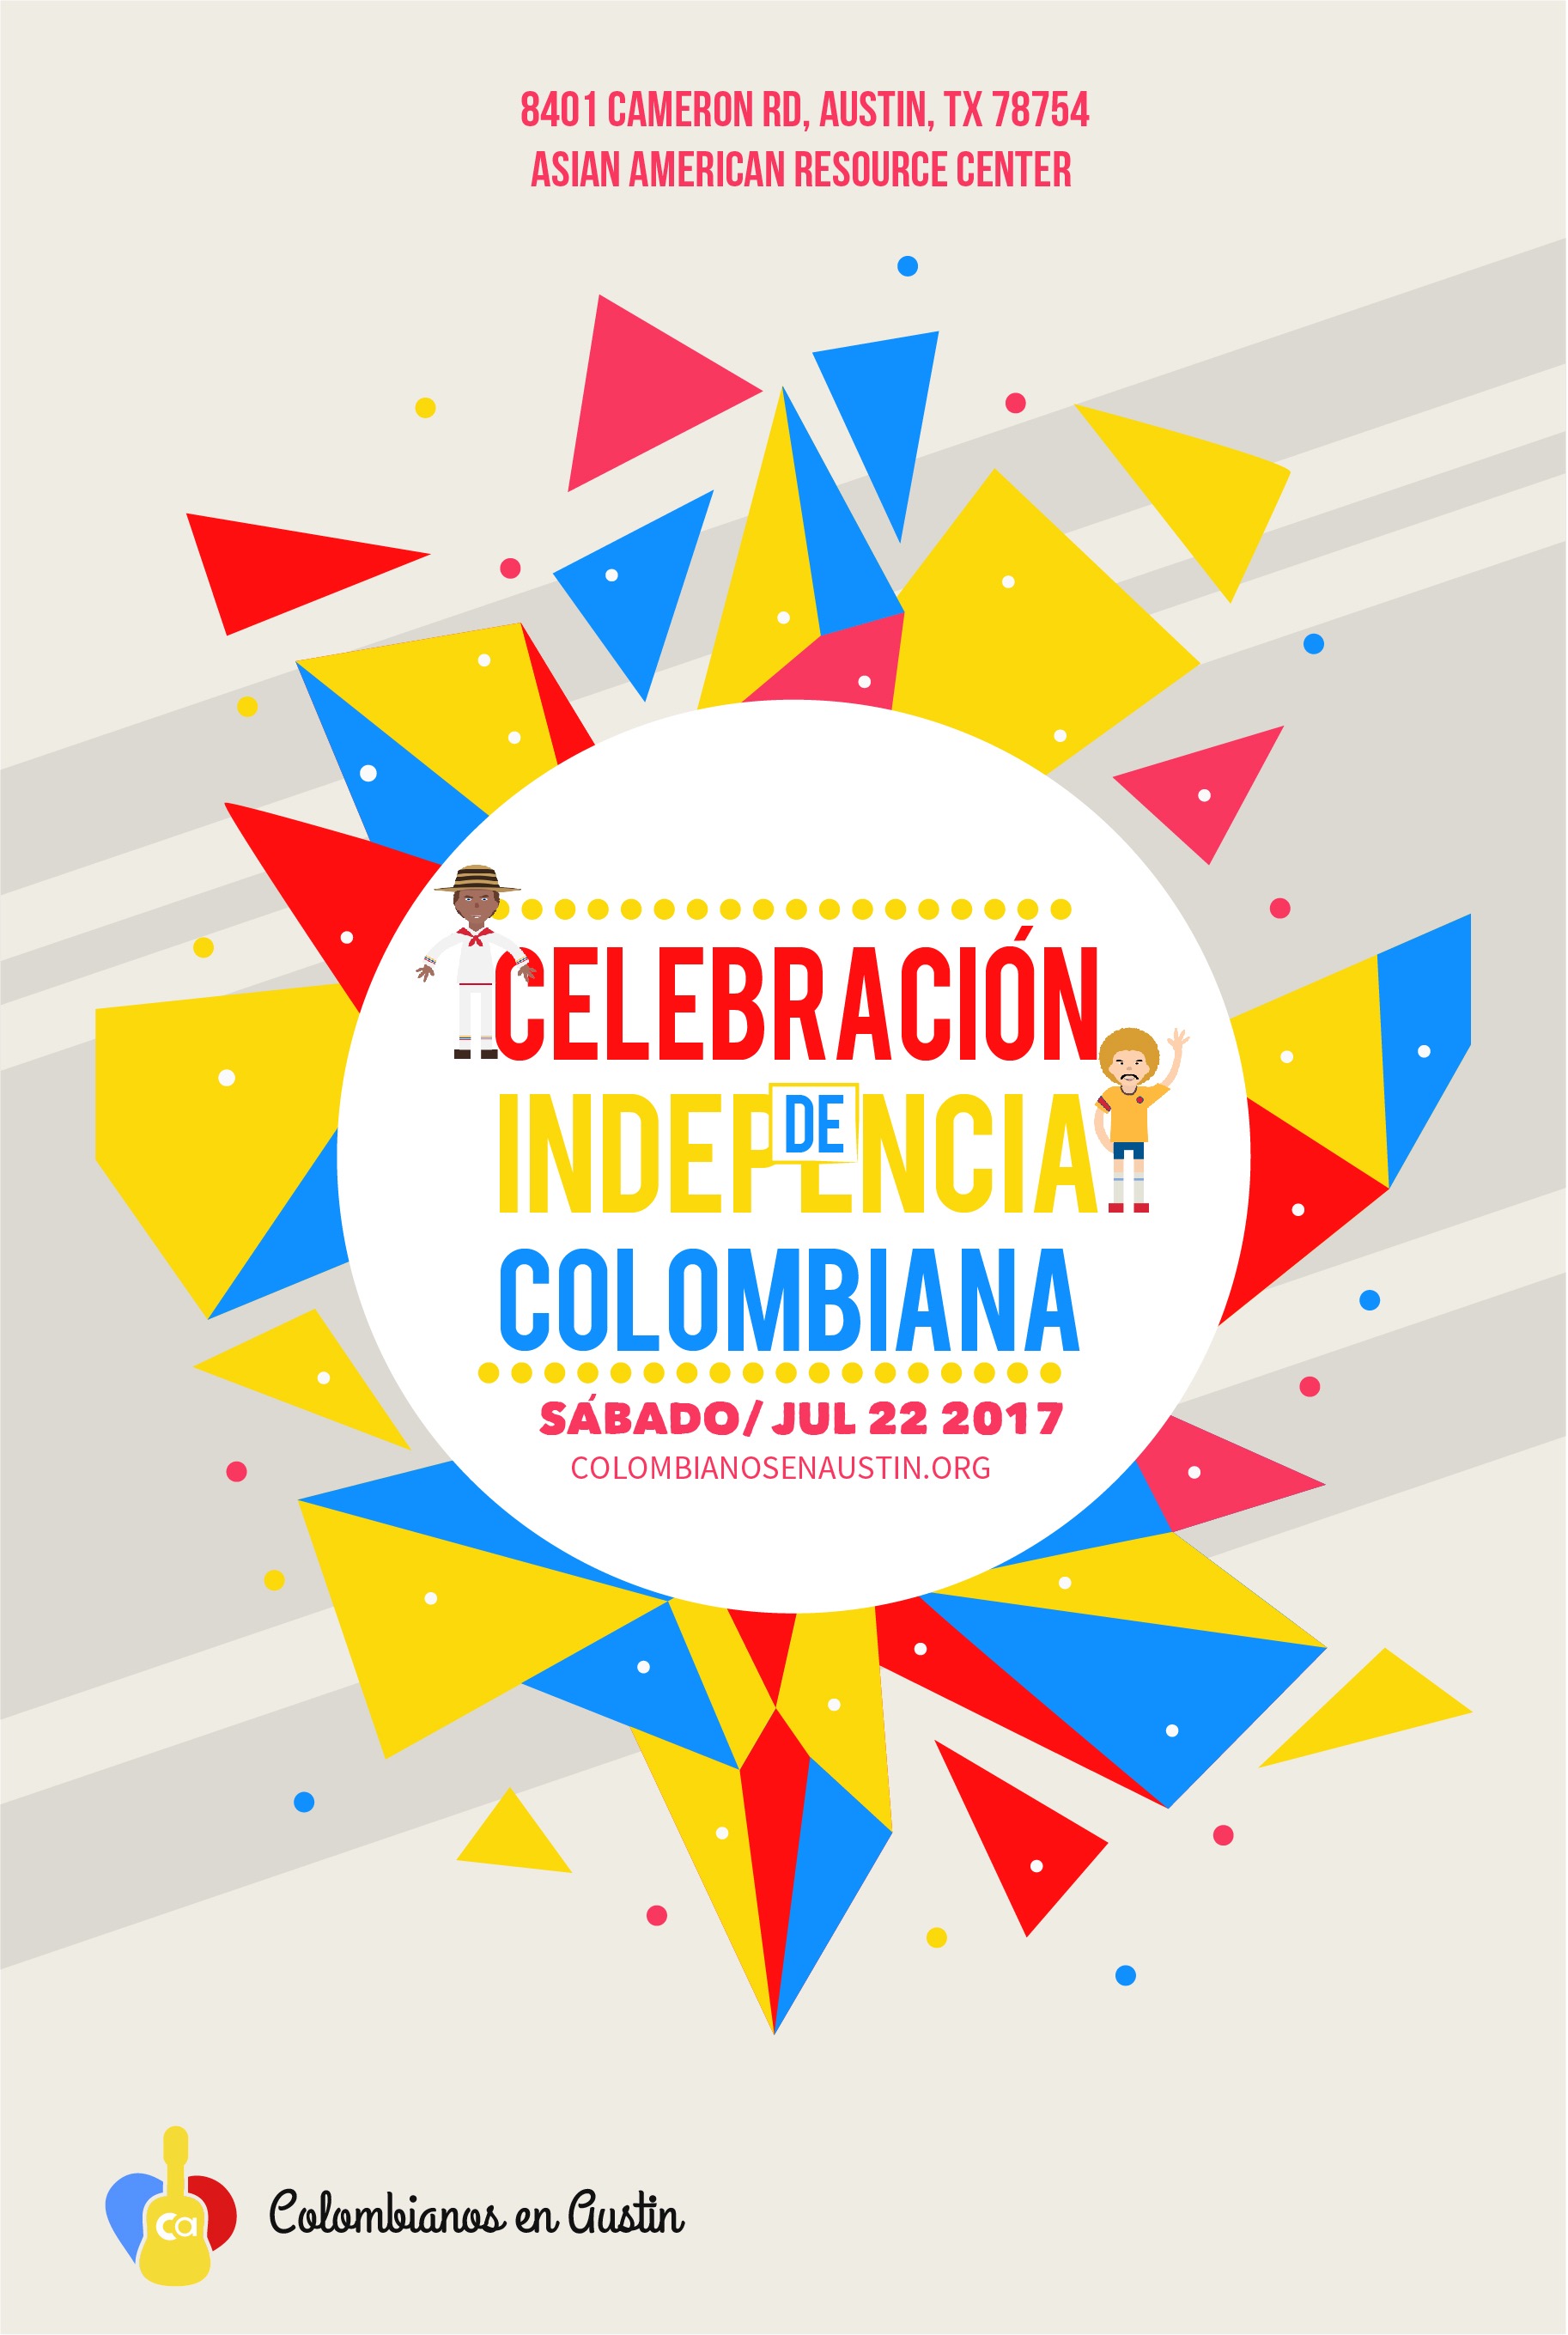 Colombianos en Austin - Celebración de independencia Colombiana 2017